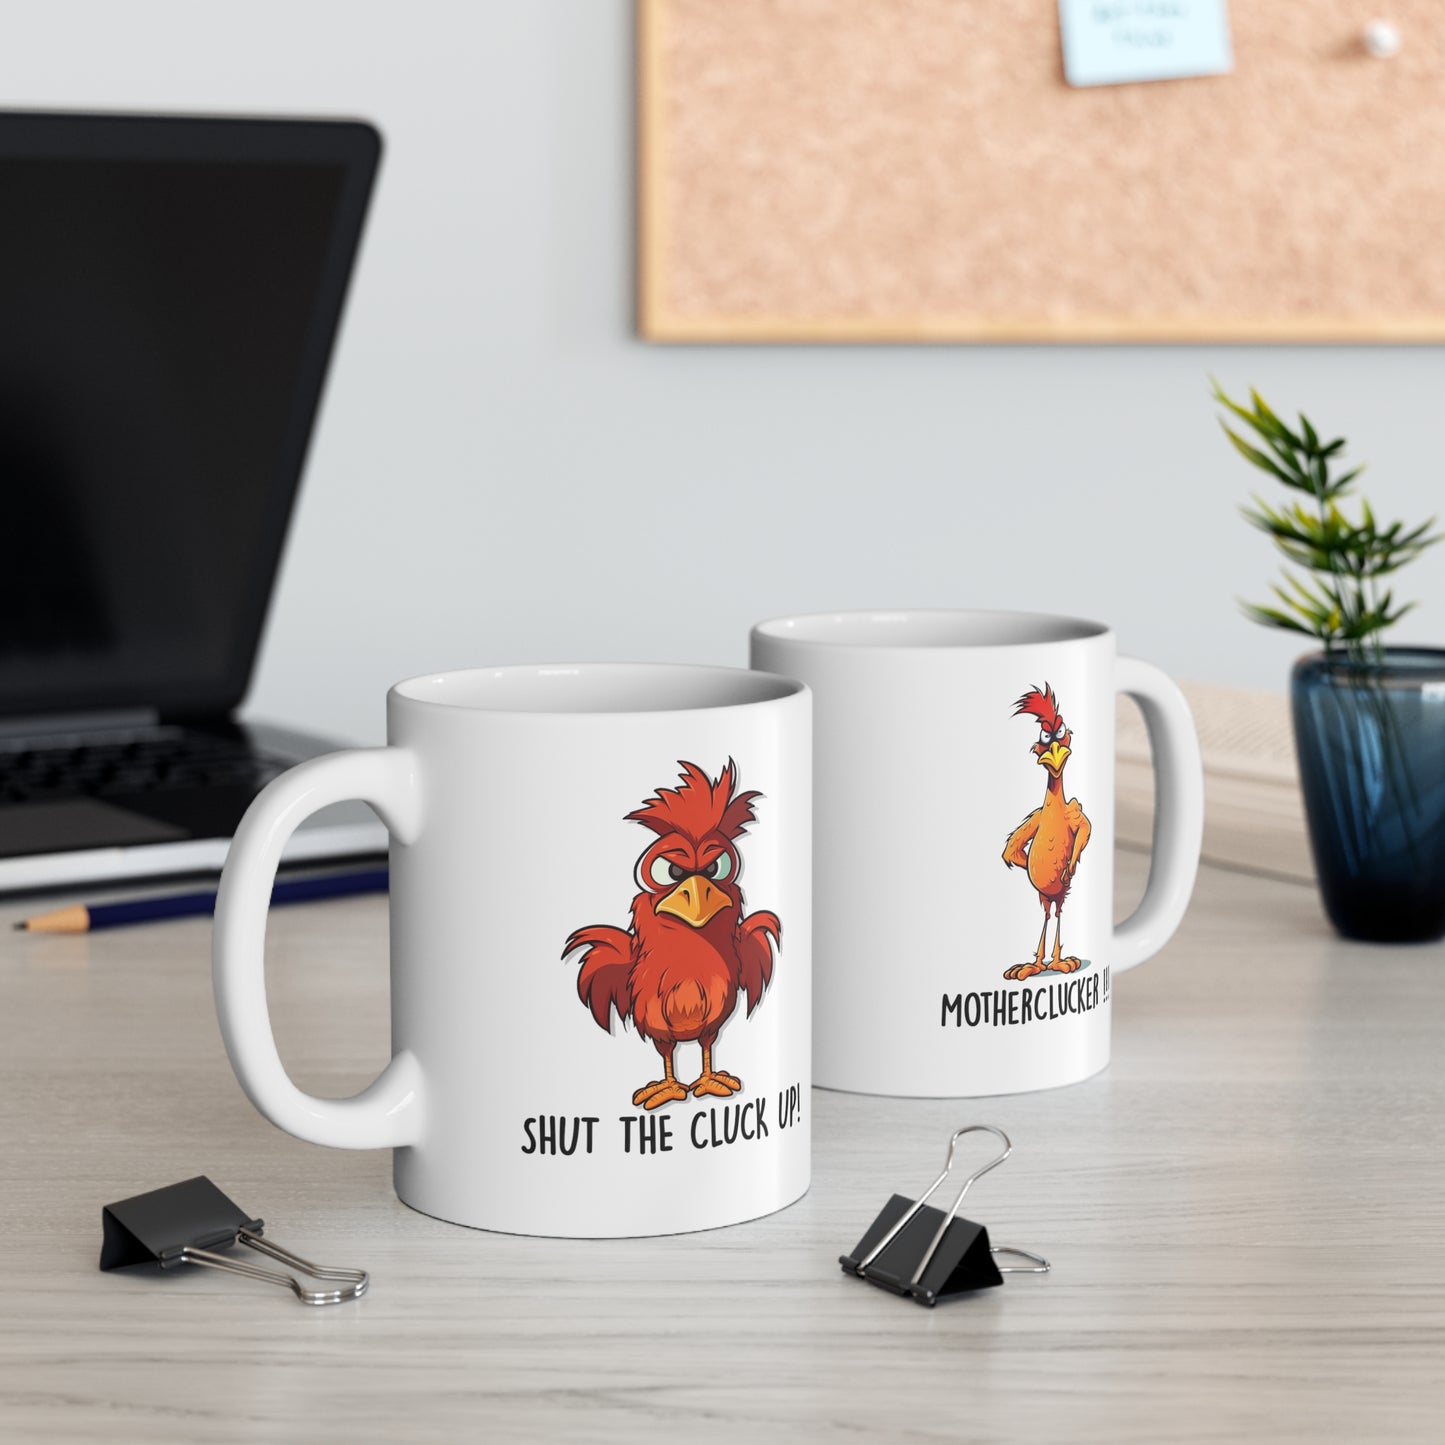 Shut the Cluck Up! 11oz Humorous Skinny Chicken Coffee Mug.